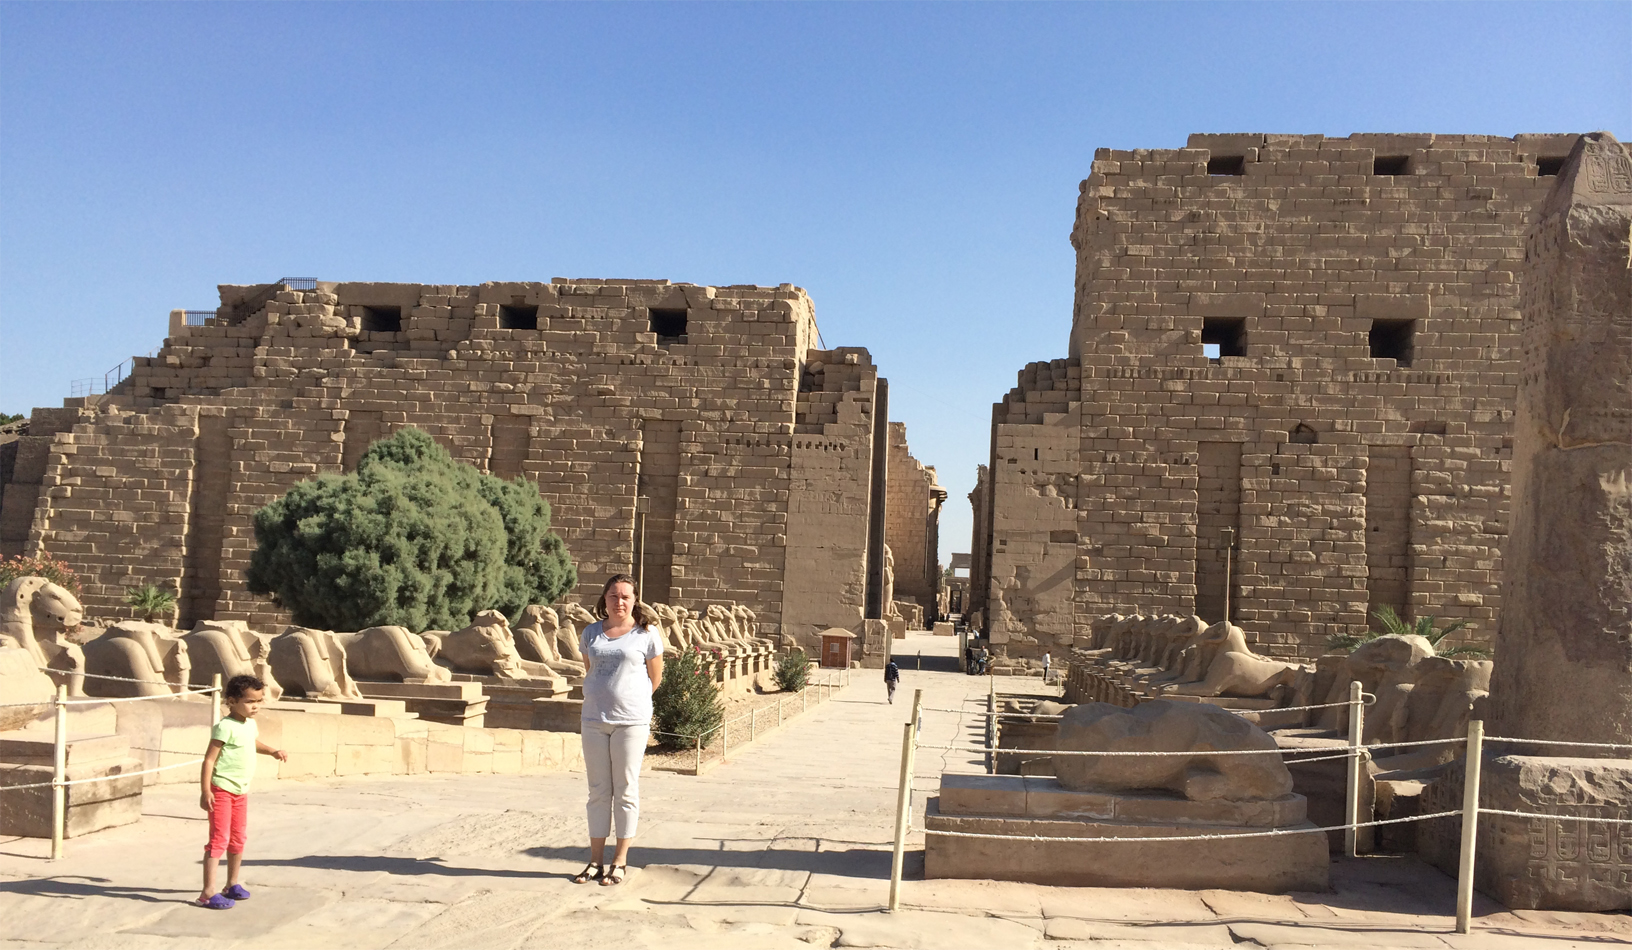 
Colossi di Memnon, riva est di Luxor